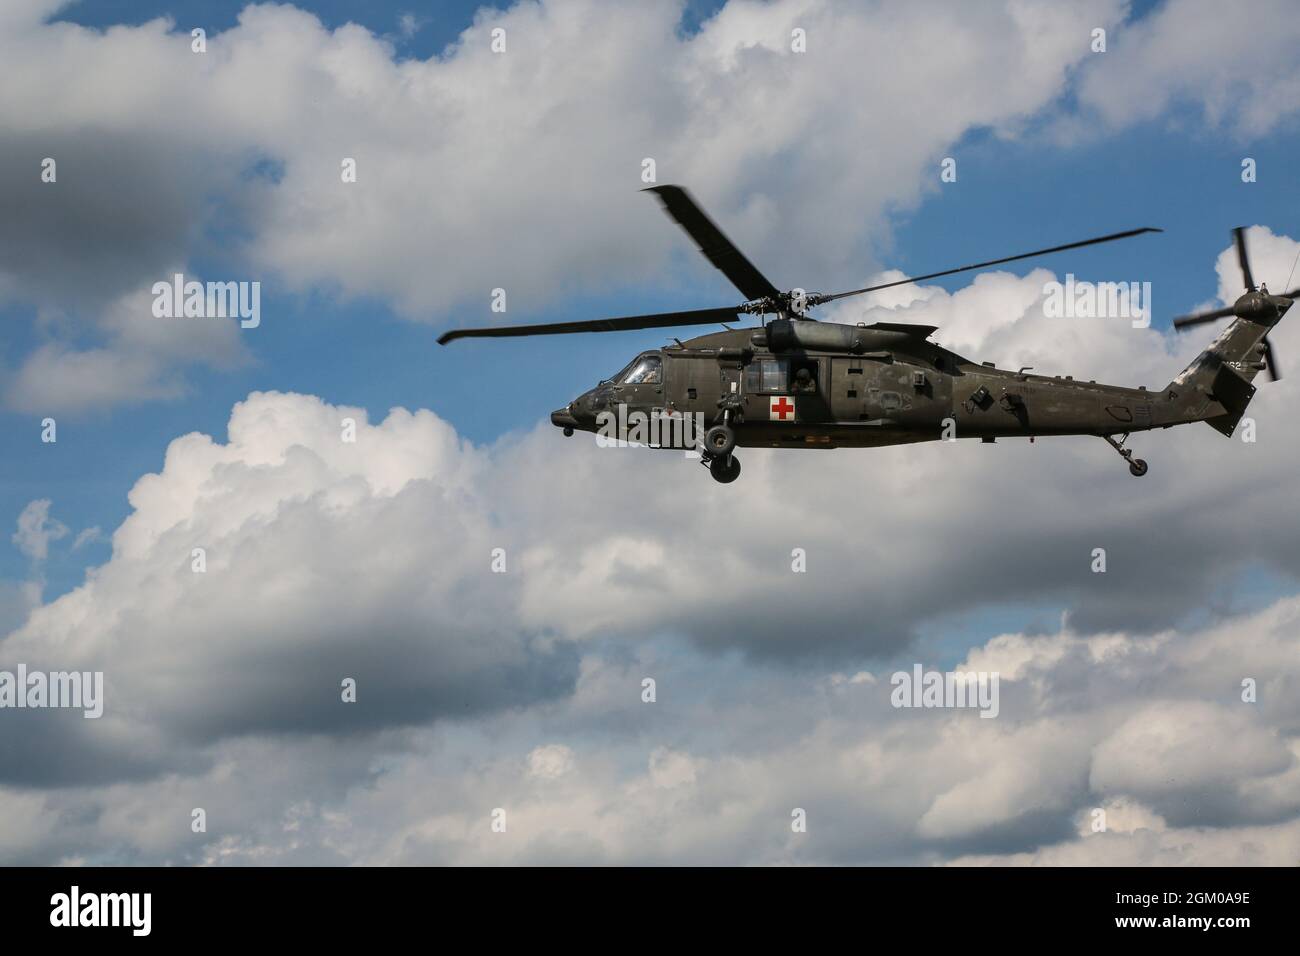 El helicóptero aterriza durante el entrenamiento de recuperación de aviones derribados durante el cruce 21 de Sabre en el área de entrenamiento de Hohenfels, Alemania, 13 de septiembre de 2021. Sabre Junction 21 (SJ21) es un Comando de Entrenamiento del Ejército de 7th (7ATC), dirigido por el Ejército de EE.UU. Europa-África (USAREUR-AF), dirigido a la rotación de entrenamiento de combate para el Regimiento de Caballería de 2nd del Ejército de EE.UU. (2CR) en el Centro de Preparación Multinacional Conjunta (JMRC) del 26 de agosto de 2021 al 29 de septiembre de 2021. El ejercicio tendrá lugar en las zonas de formación de Grafenwoehr y Hohenfels, en el sur de Baviera, Alemania. El ejercicio está diseñado para evaluar y evaluar la preparación Foto de stock